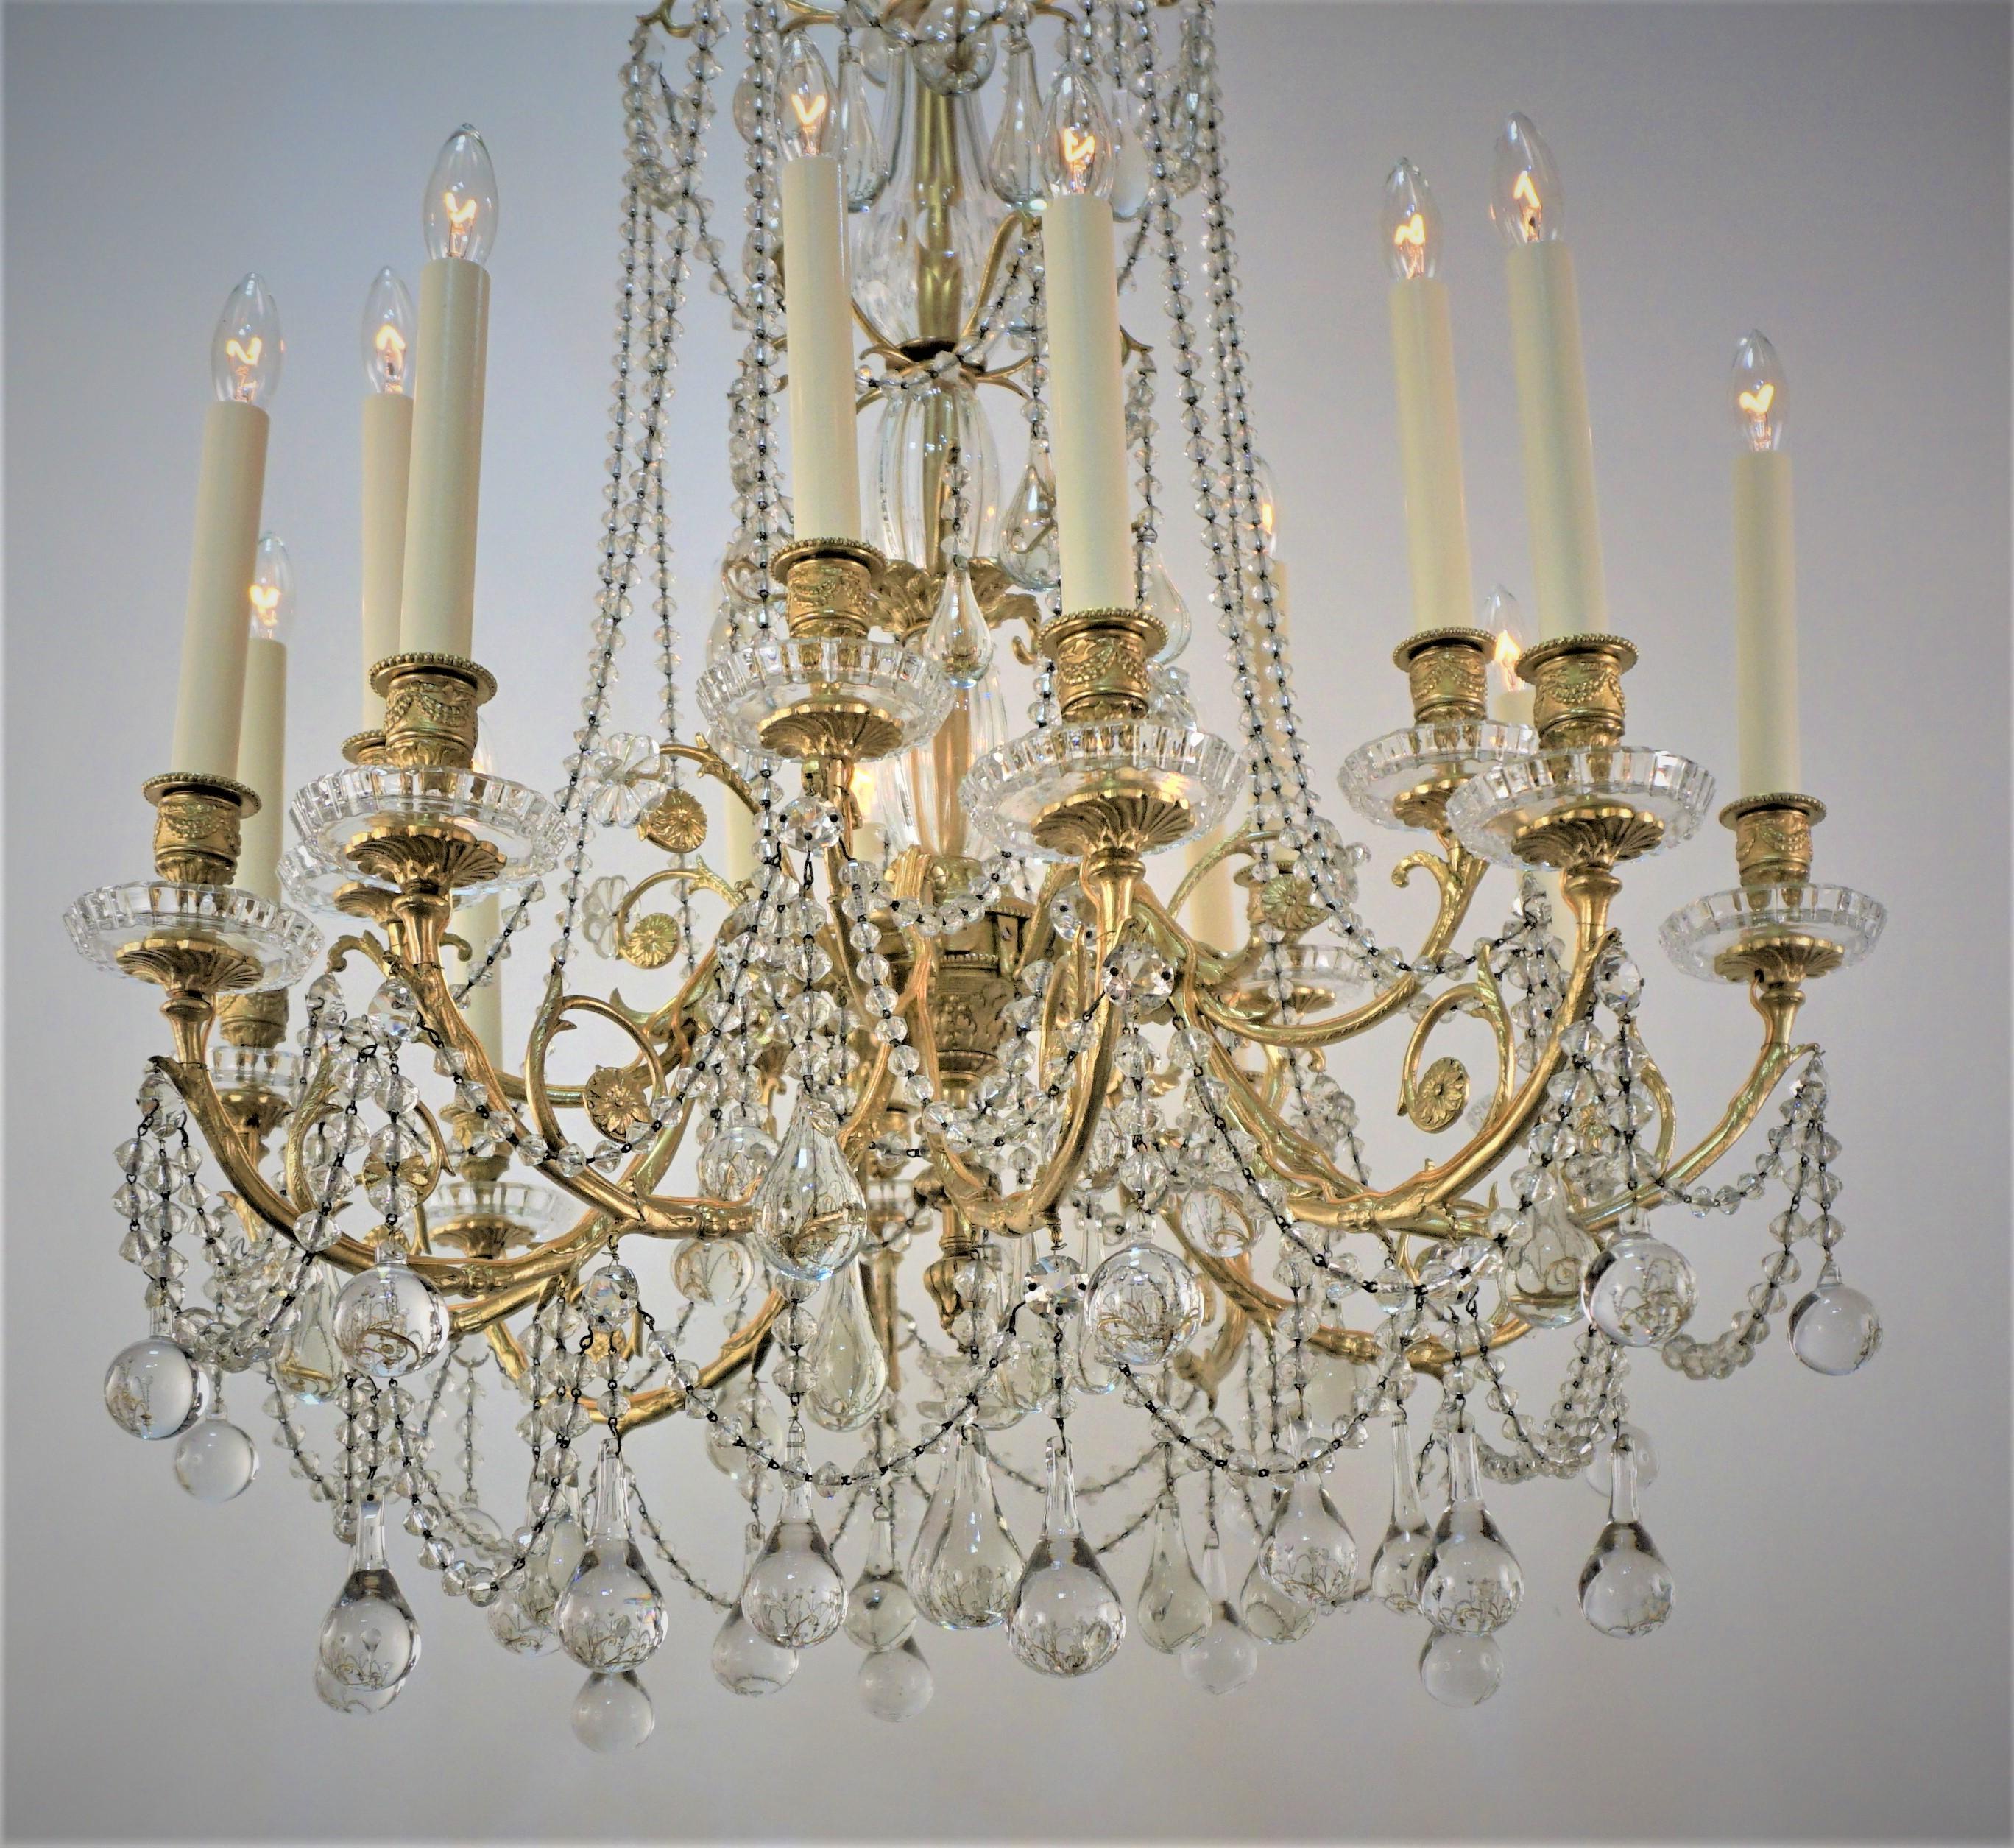 Exquis lustre à quinze lumières en bronze et cristal de la fin du XIXe siècle, marqué Baccarat.
Recâblage professionnel et prêt à être installé.
Mesures : 29 de large, 46